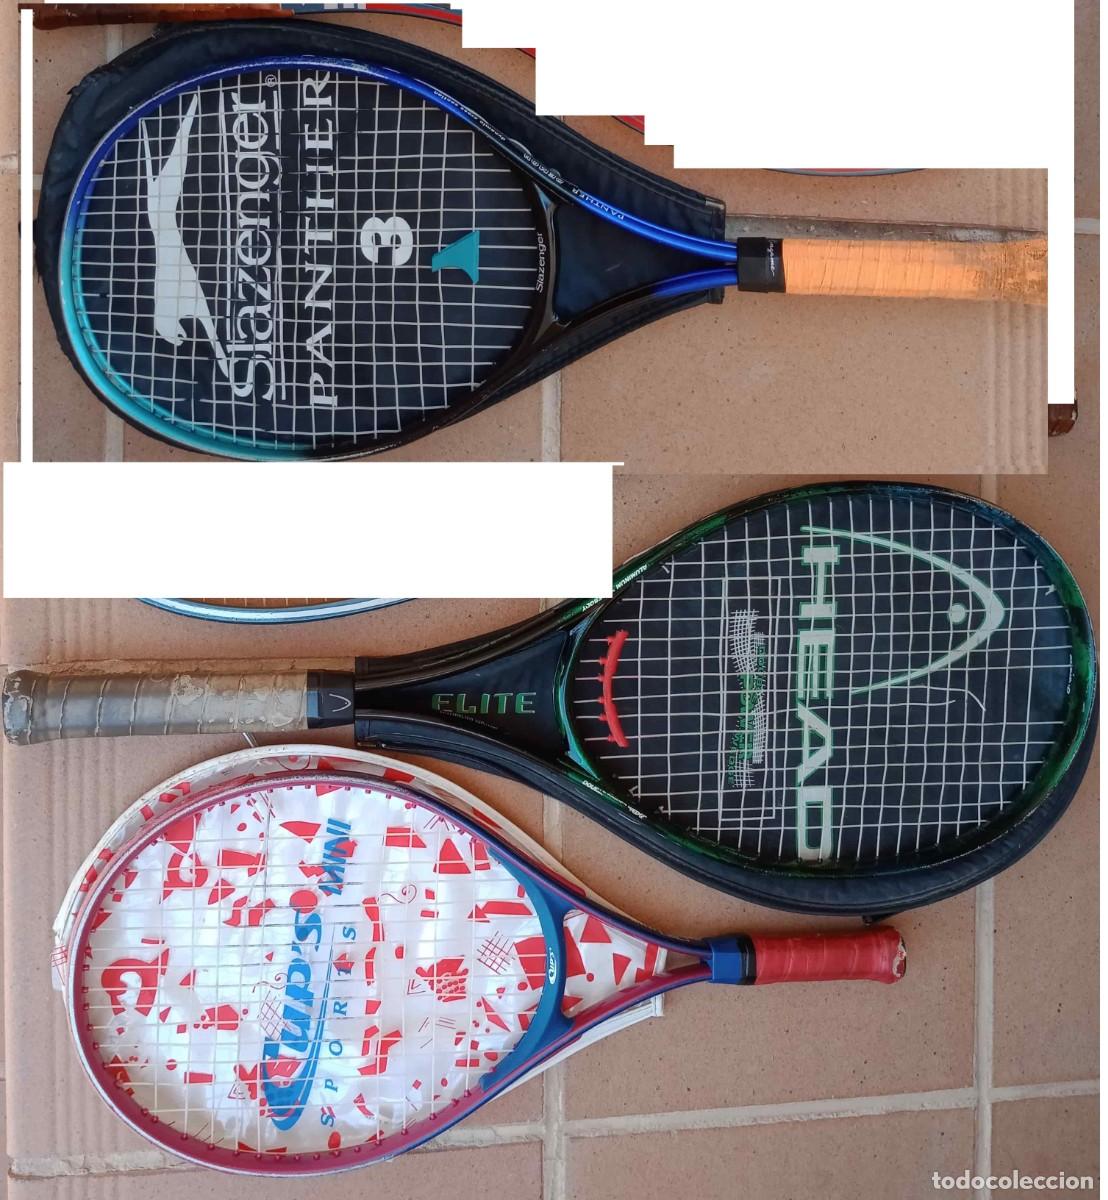 tenis - raqueta 'head elite' (pendiente arregla - en todocoleccion 340857243